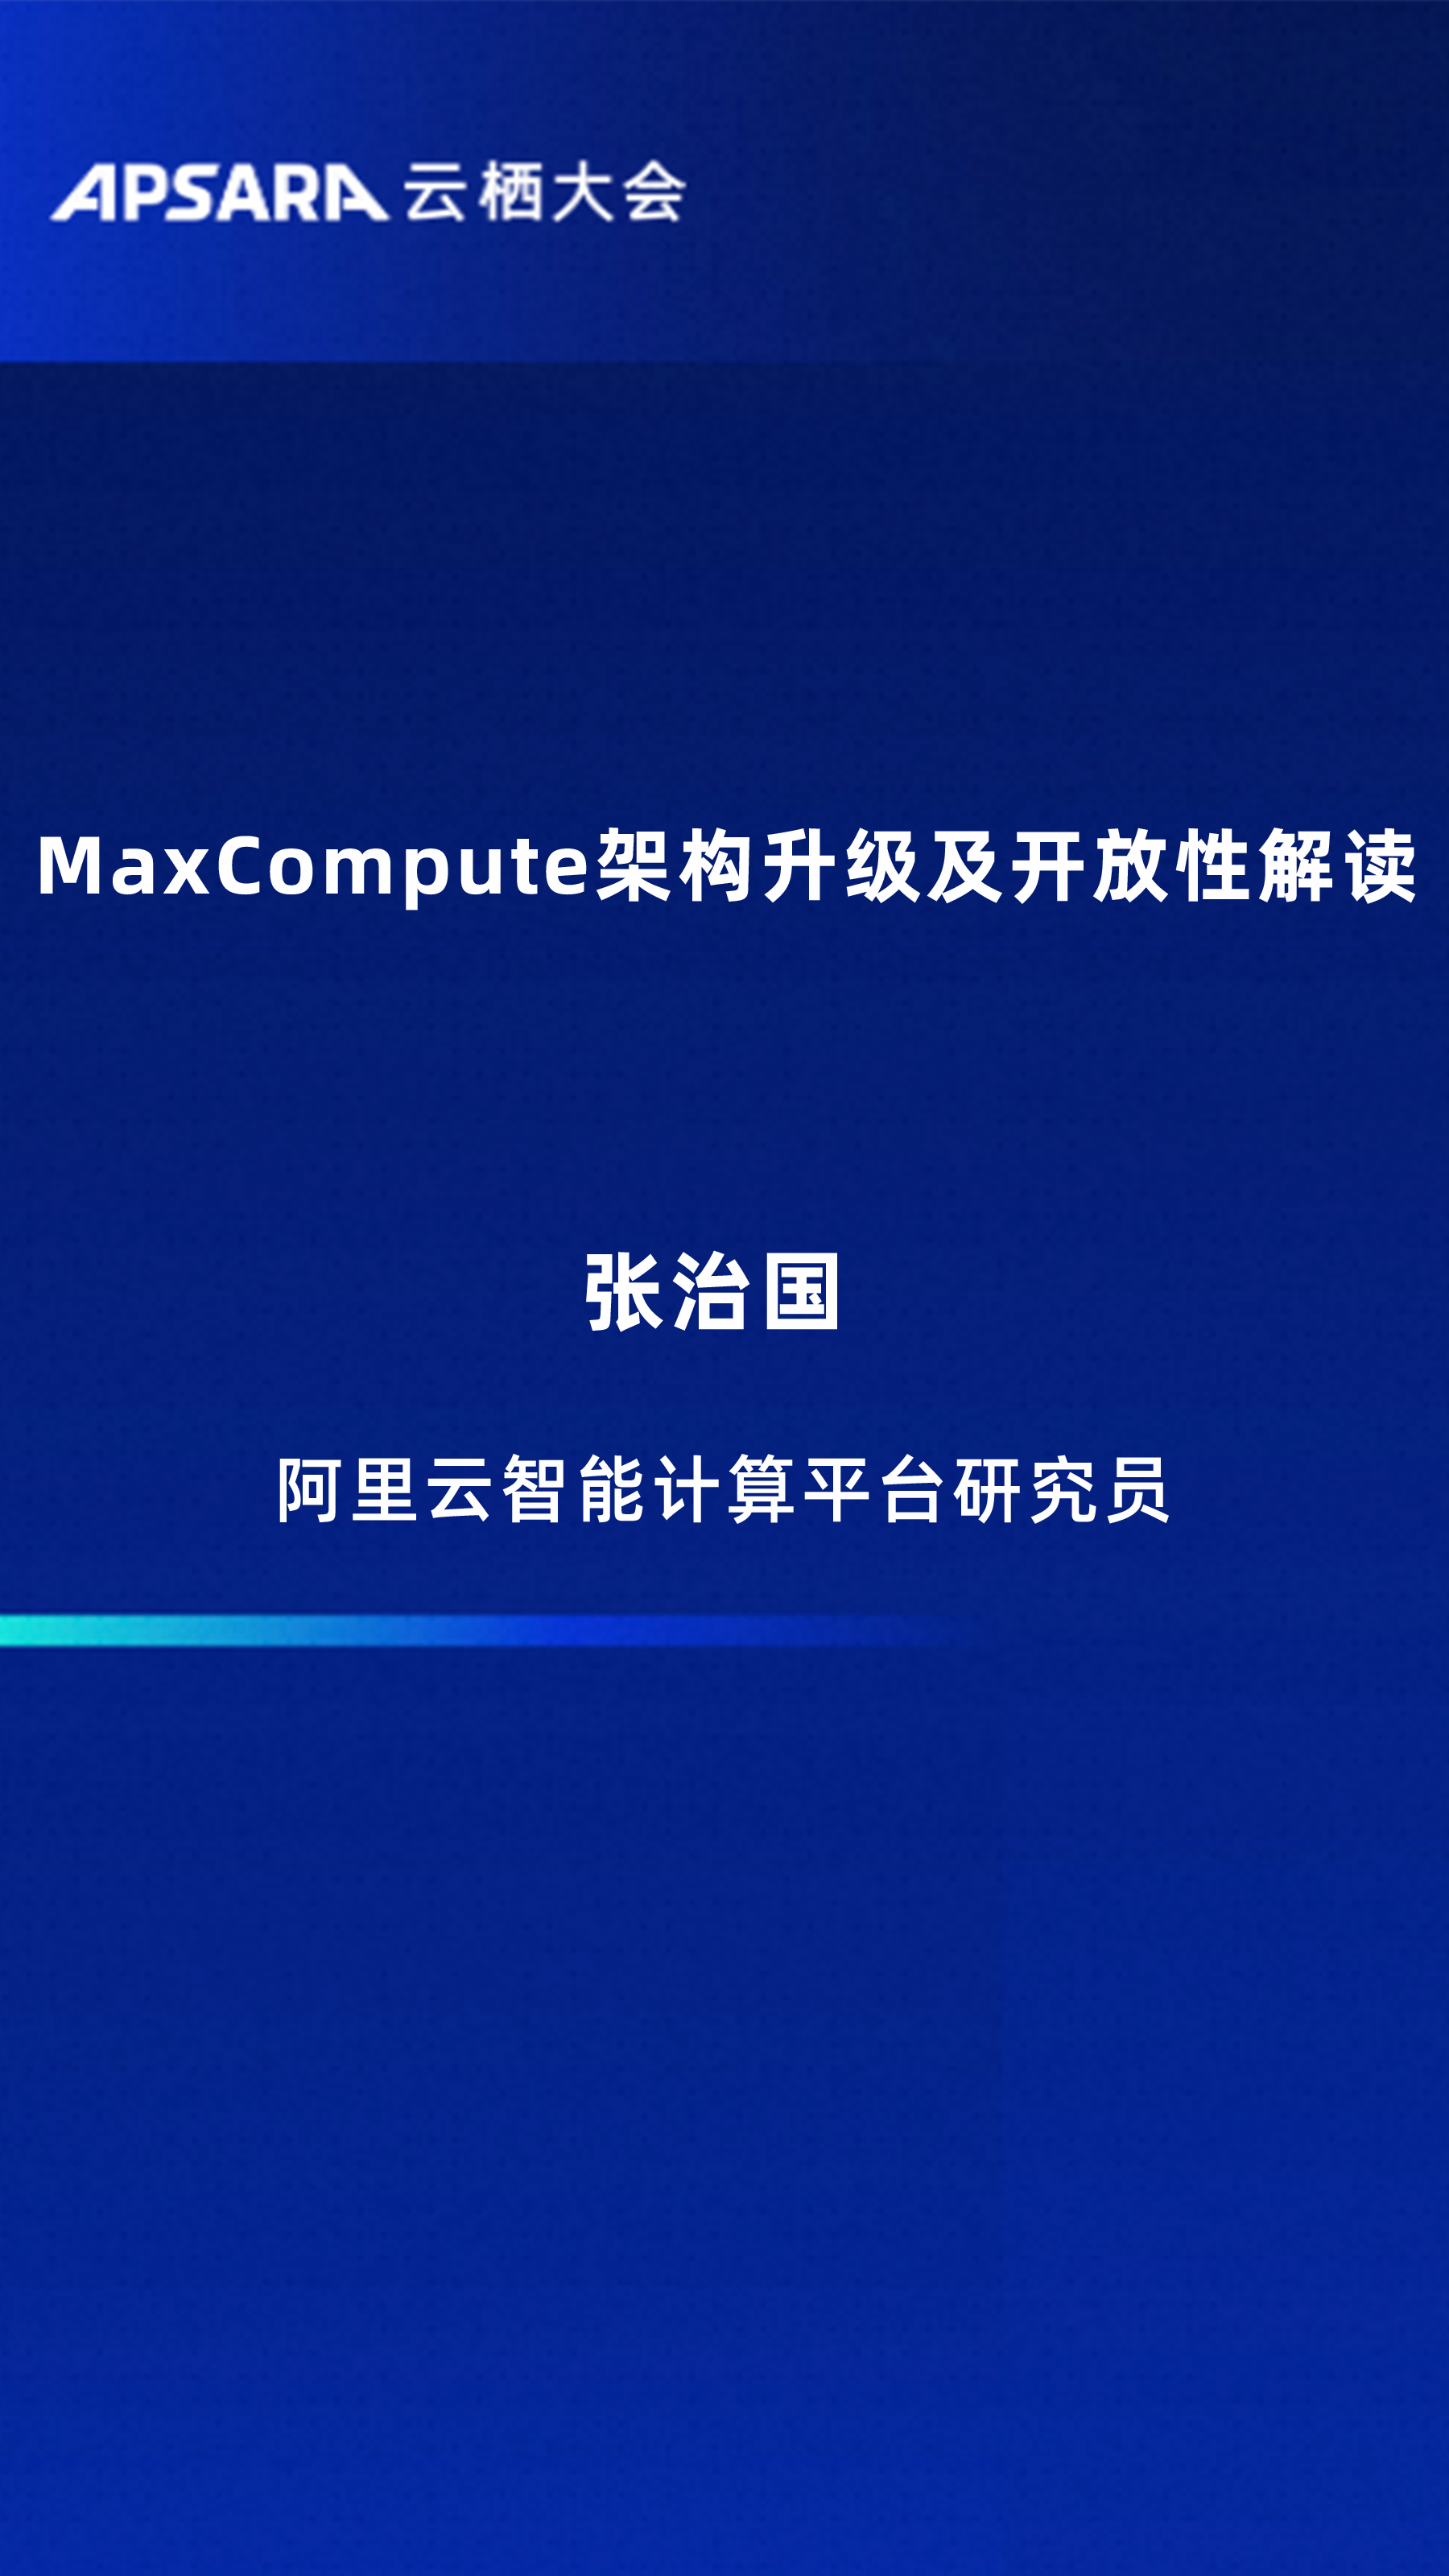 MaxCompute架构升级及开放性解读